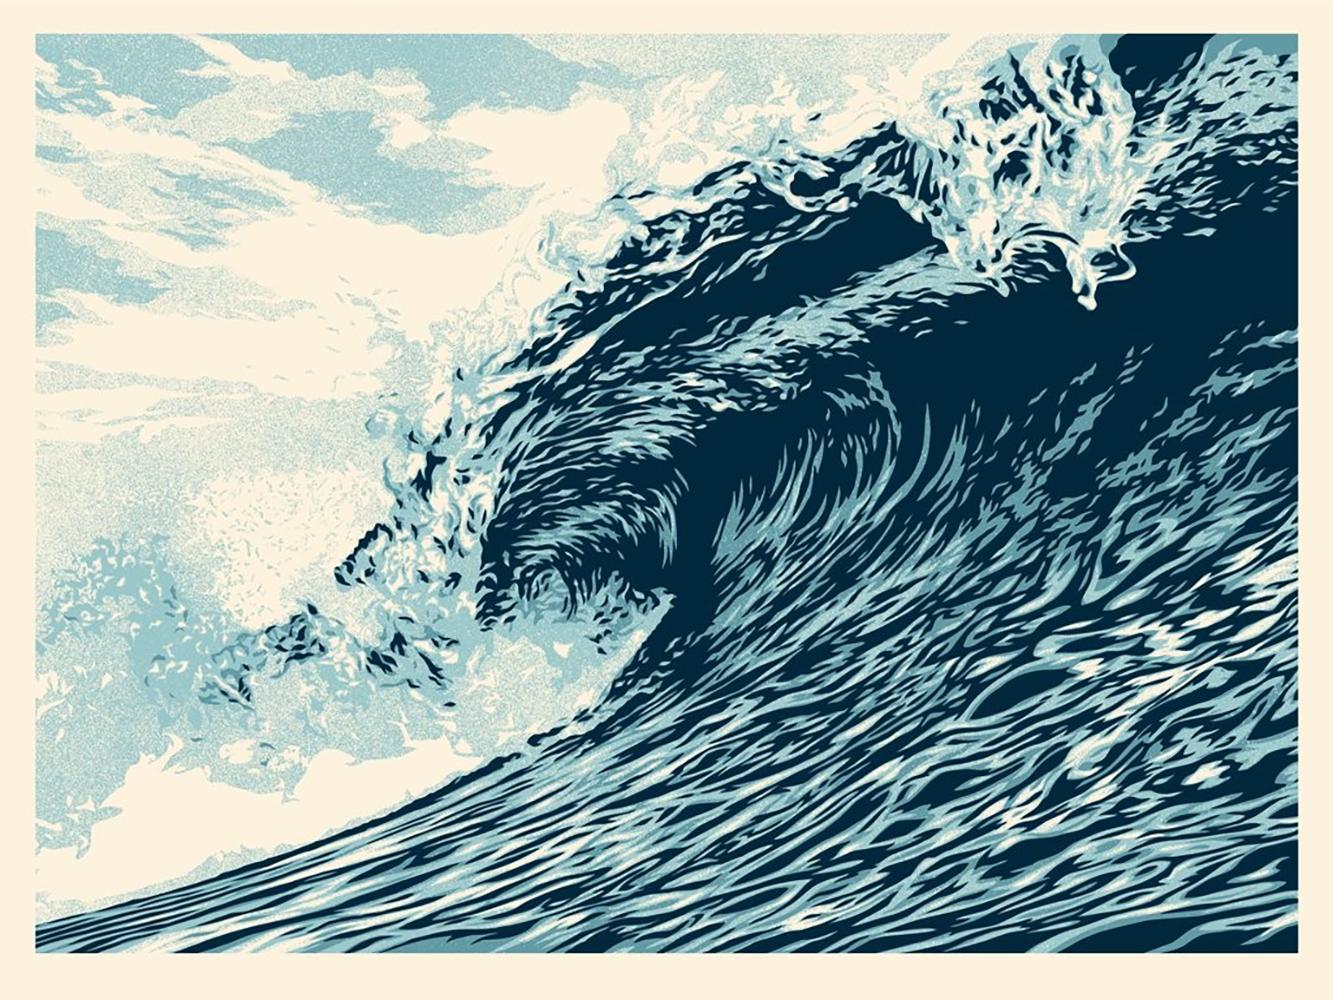 Shepard Fairey - Obey Giant - Wave of Distress : Blue Ed.

"Am Montag ist Weltwassertag, und das ist ein passender Tag, um der Veröffentlichung dieser Wave of Distress-Drucke vorauszugehen. Der Weltwassertag lenkt die Aufmerksamkeit nicht nur auf